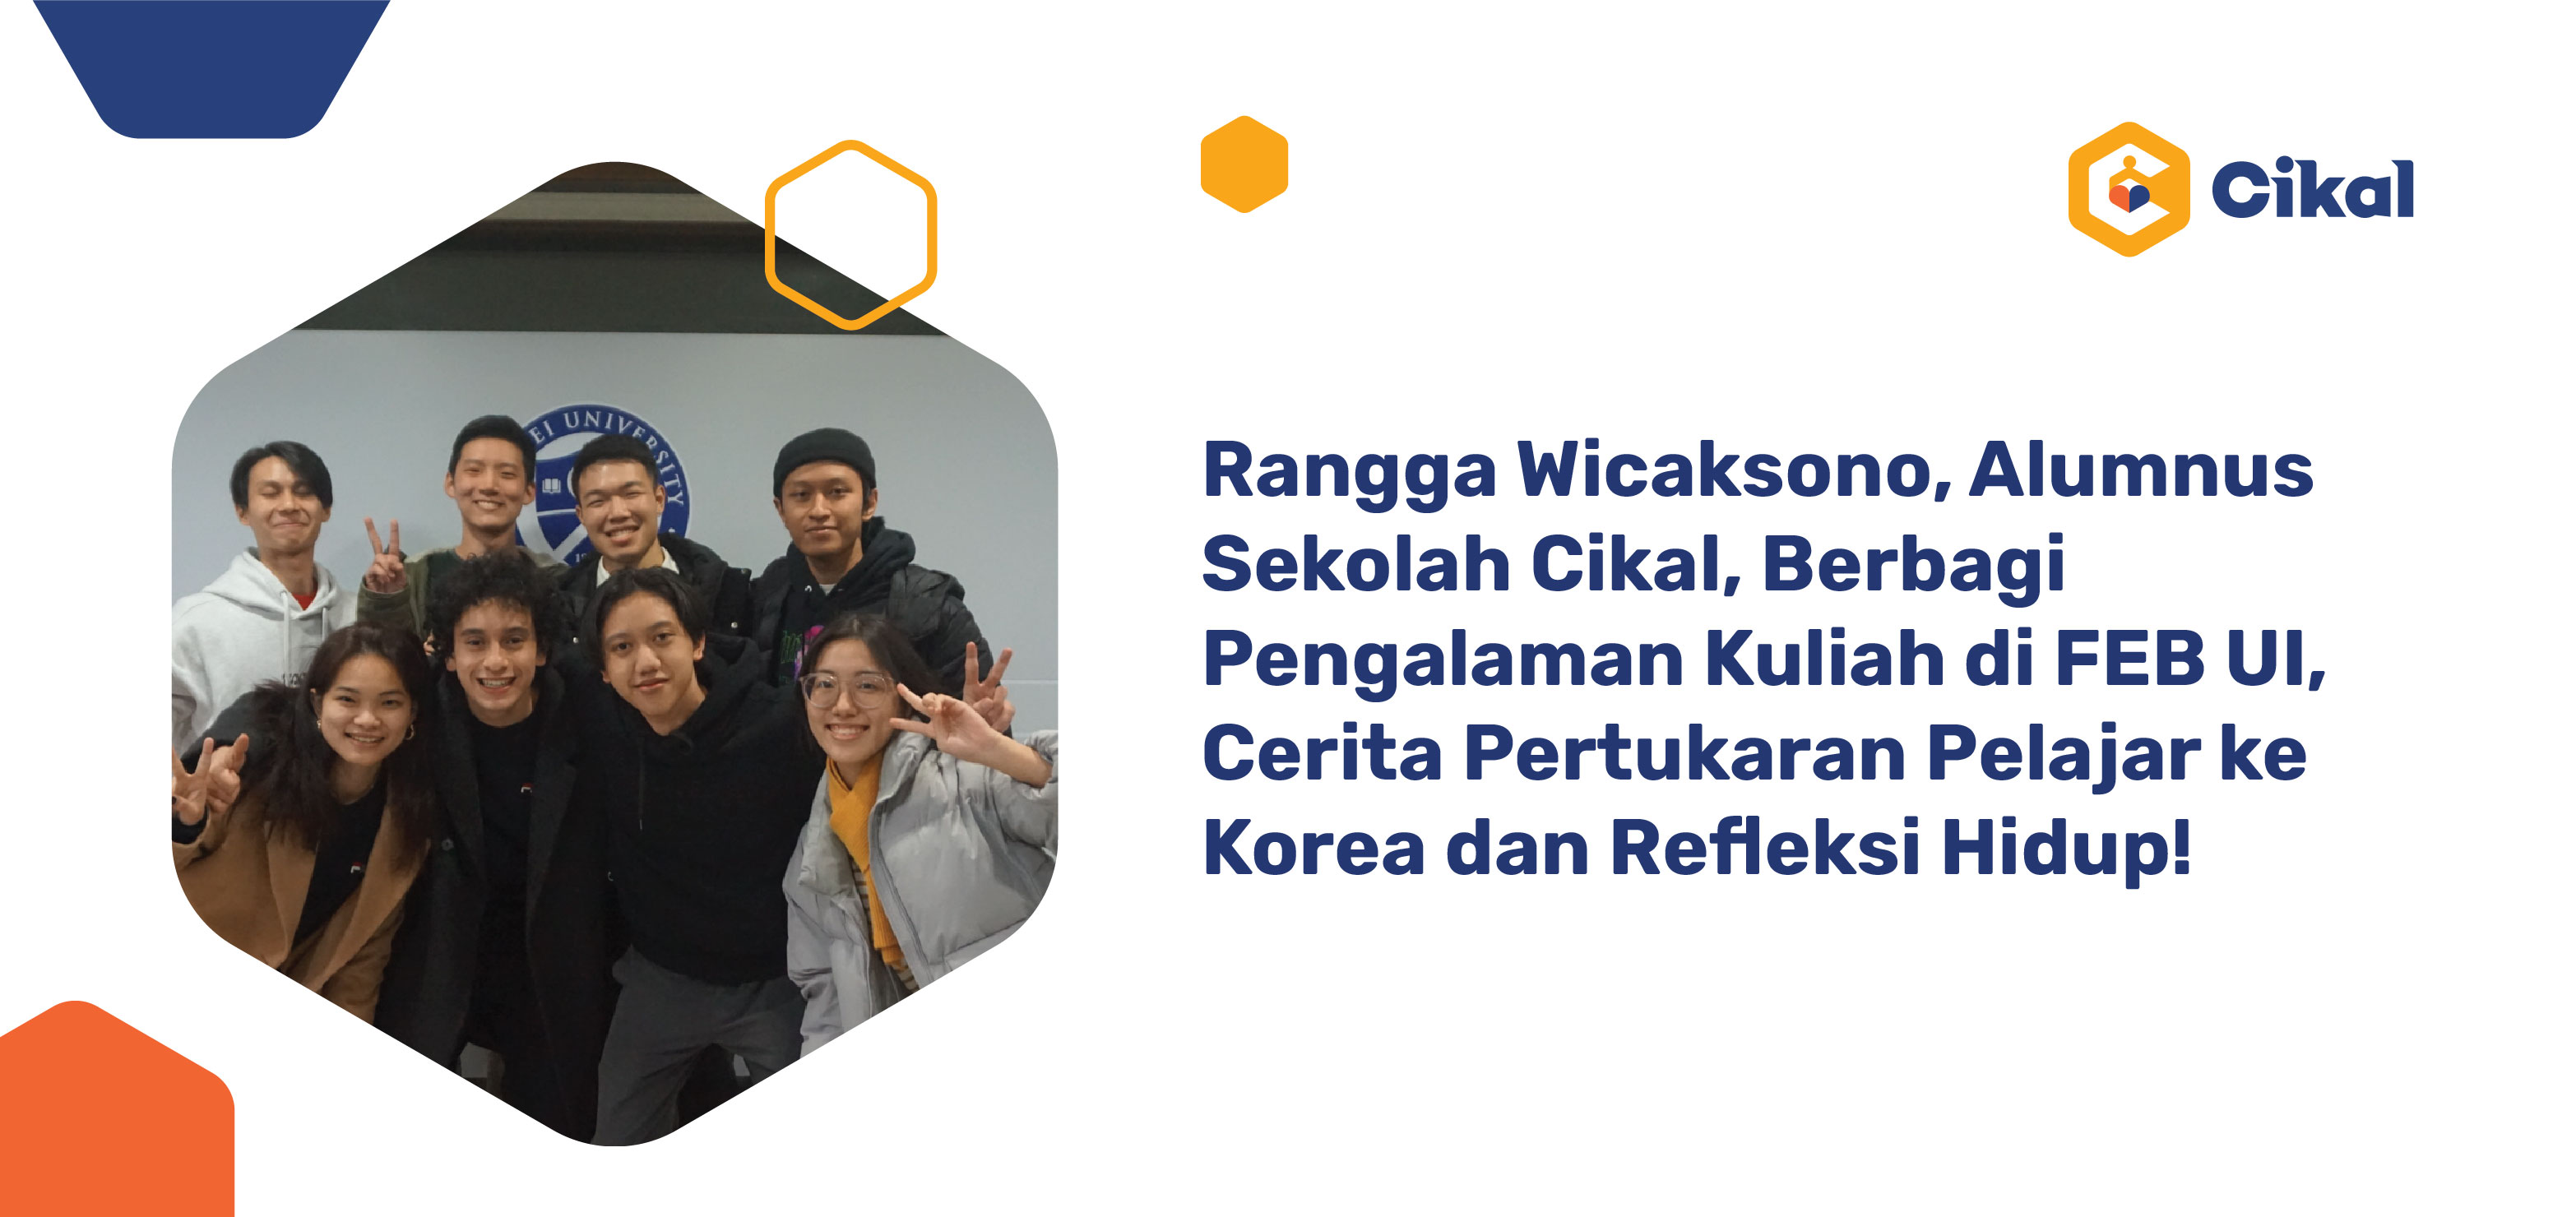 Rangga Wicaksono, Alumnus Sekolah Cikal, Berbagi Pengalaman Kuliah di FEB UI, Cerita Pertukaran Pelajar ke Korea dan Refleksi Hidup!